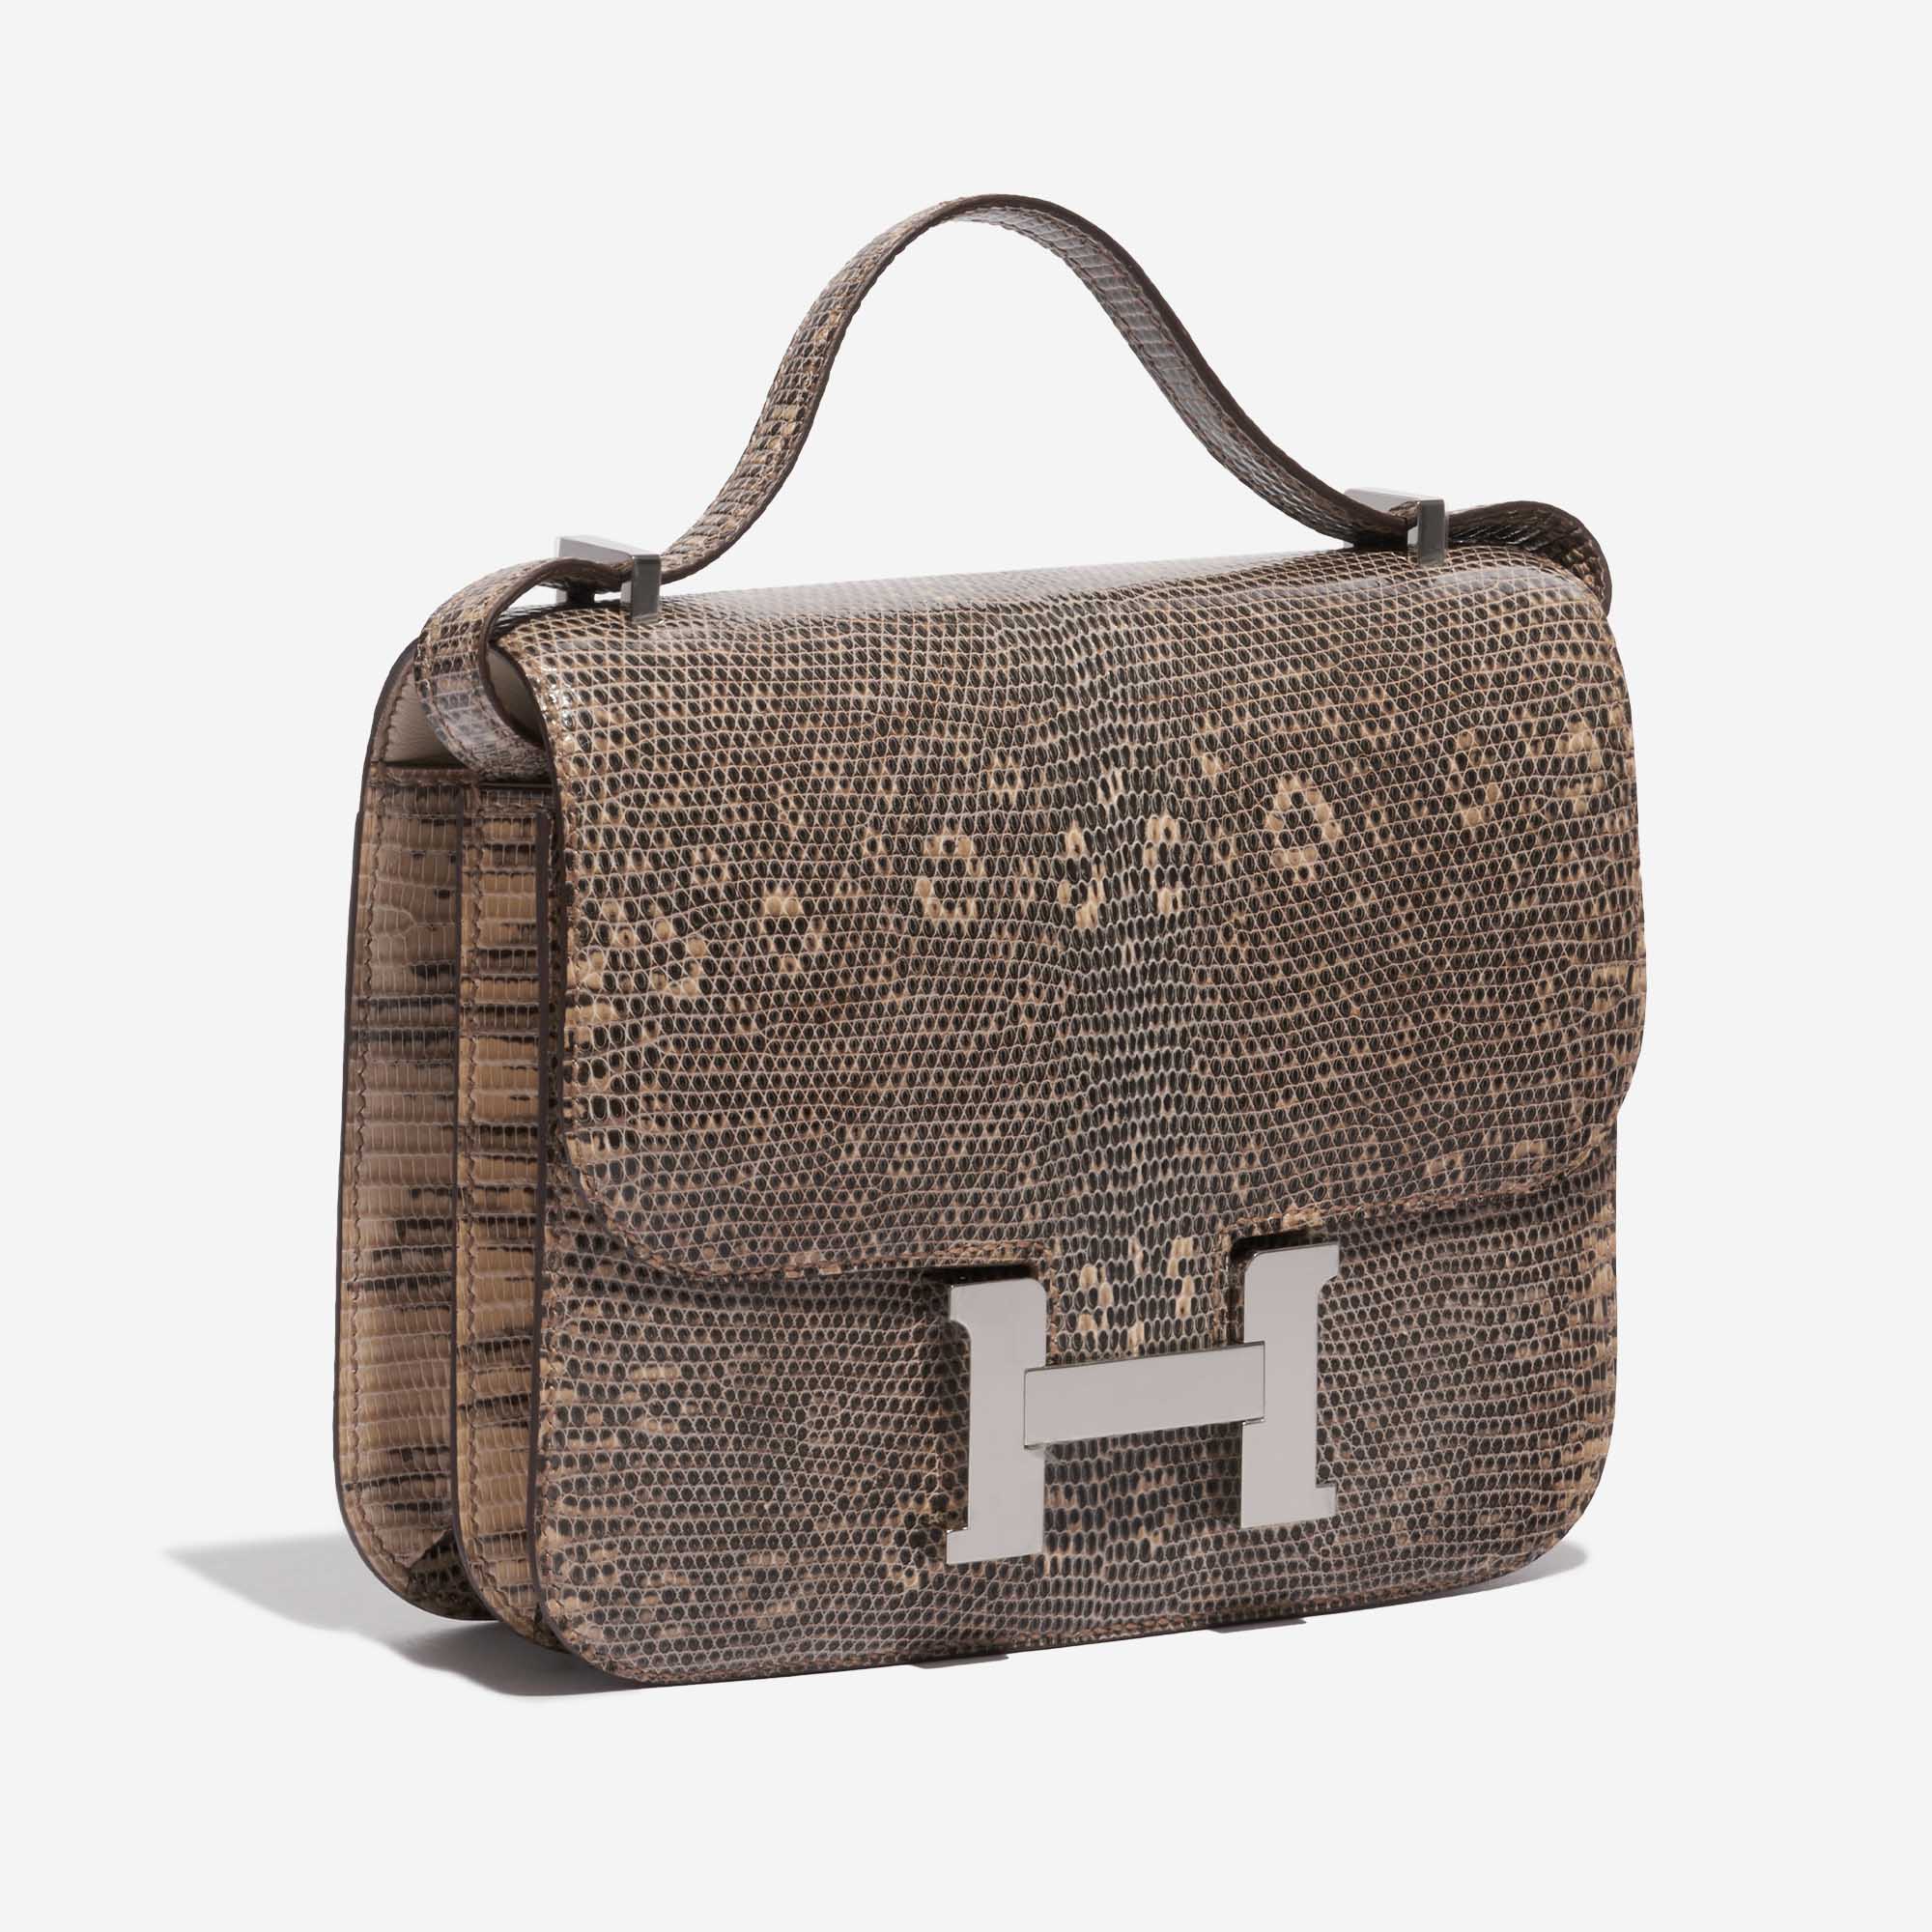 Pre-owned Hermès Tasche Constance 18 Salvator Lizard Desert Ombré Beige, Brown Side Front | Verkaufen Sie Ihre Designer-Tasche auf Saclab.com